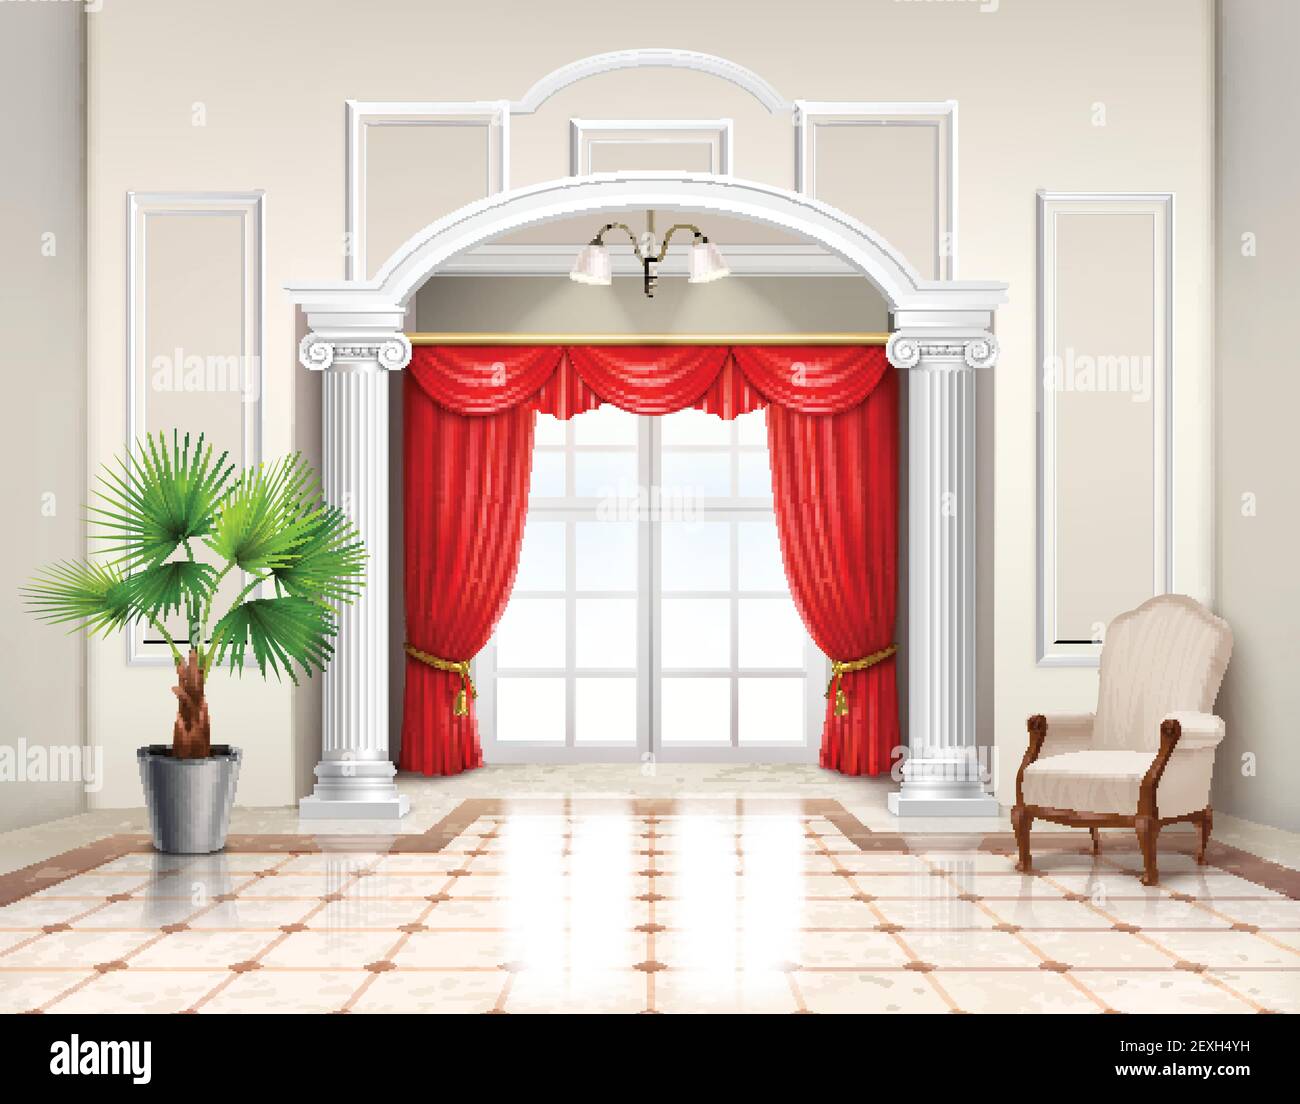 Realistisches Interieur-Design im klassischen Stil mit hellenistischen Säulen französisch Fenster und Luxus rote Vorhänge Vektor-Illustration Stock Vektor